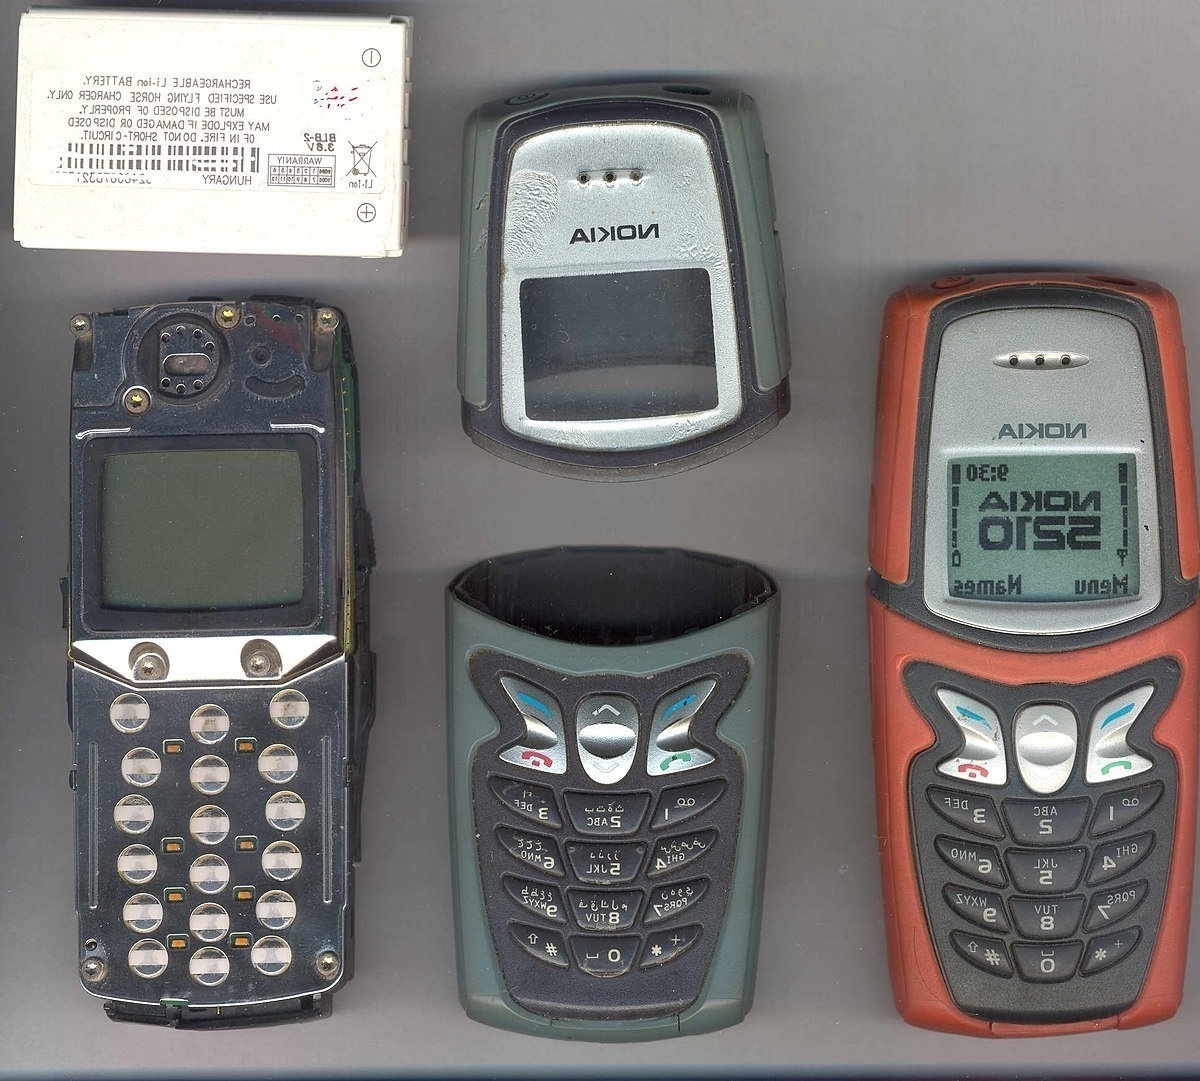 Επιστροφή στα βασικά: Κορυφαία παλιά κινητά τηλέφωνα χωρίς Internet